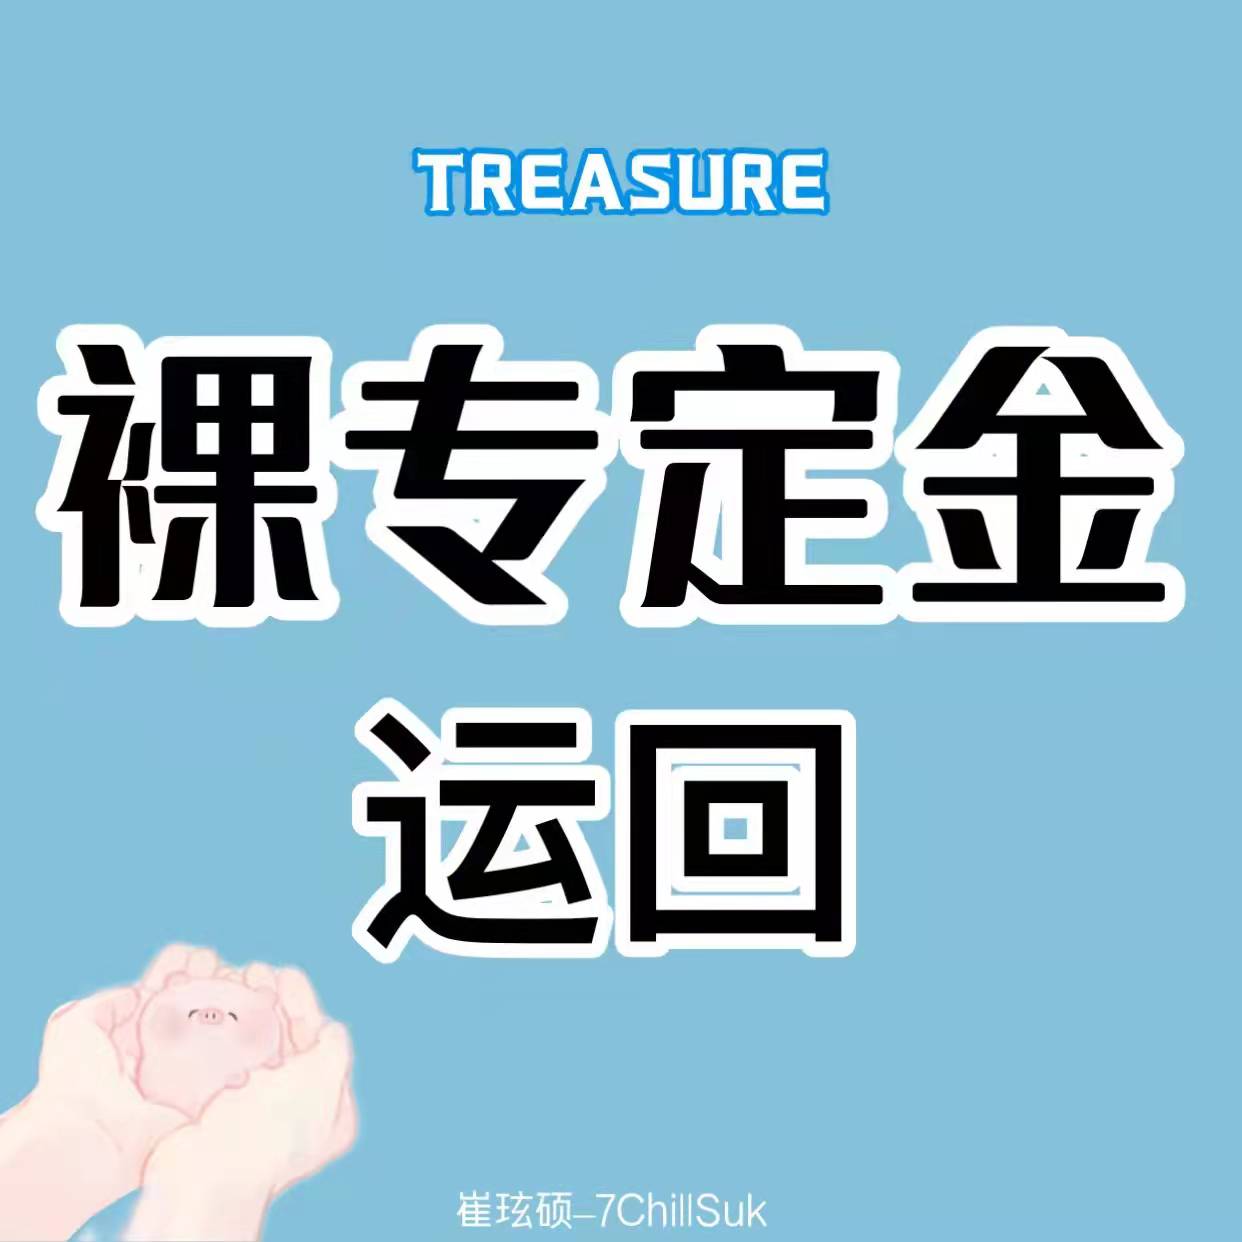 [定金 裸专] TREASURE回归专_崔玹硕_7ChillSuk